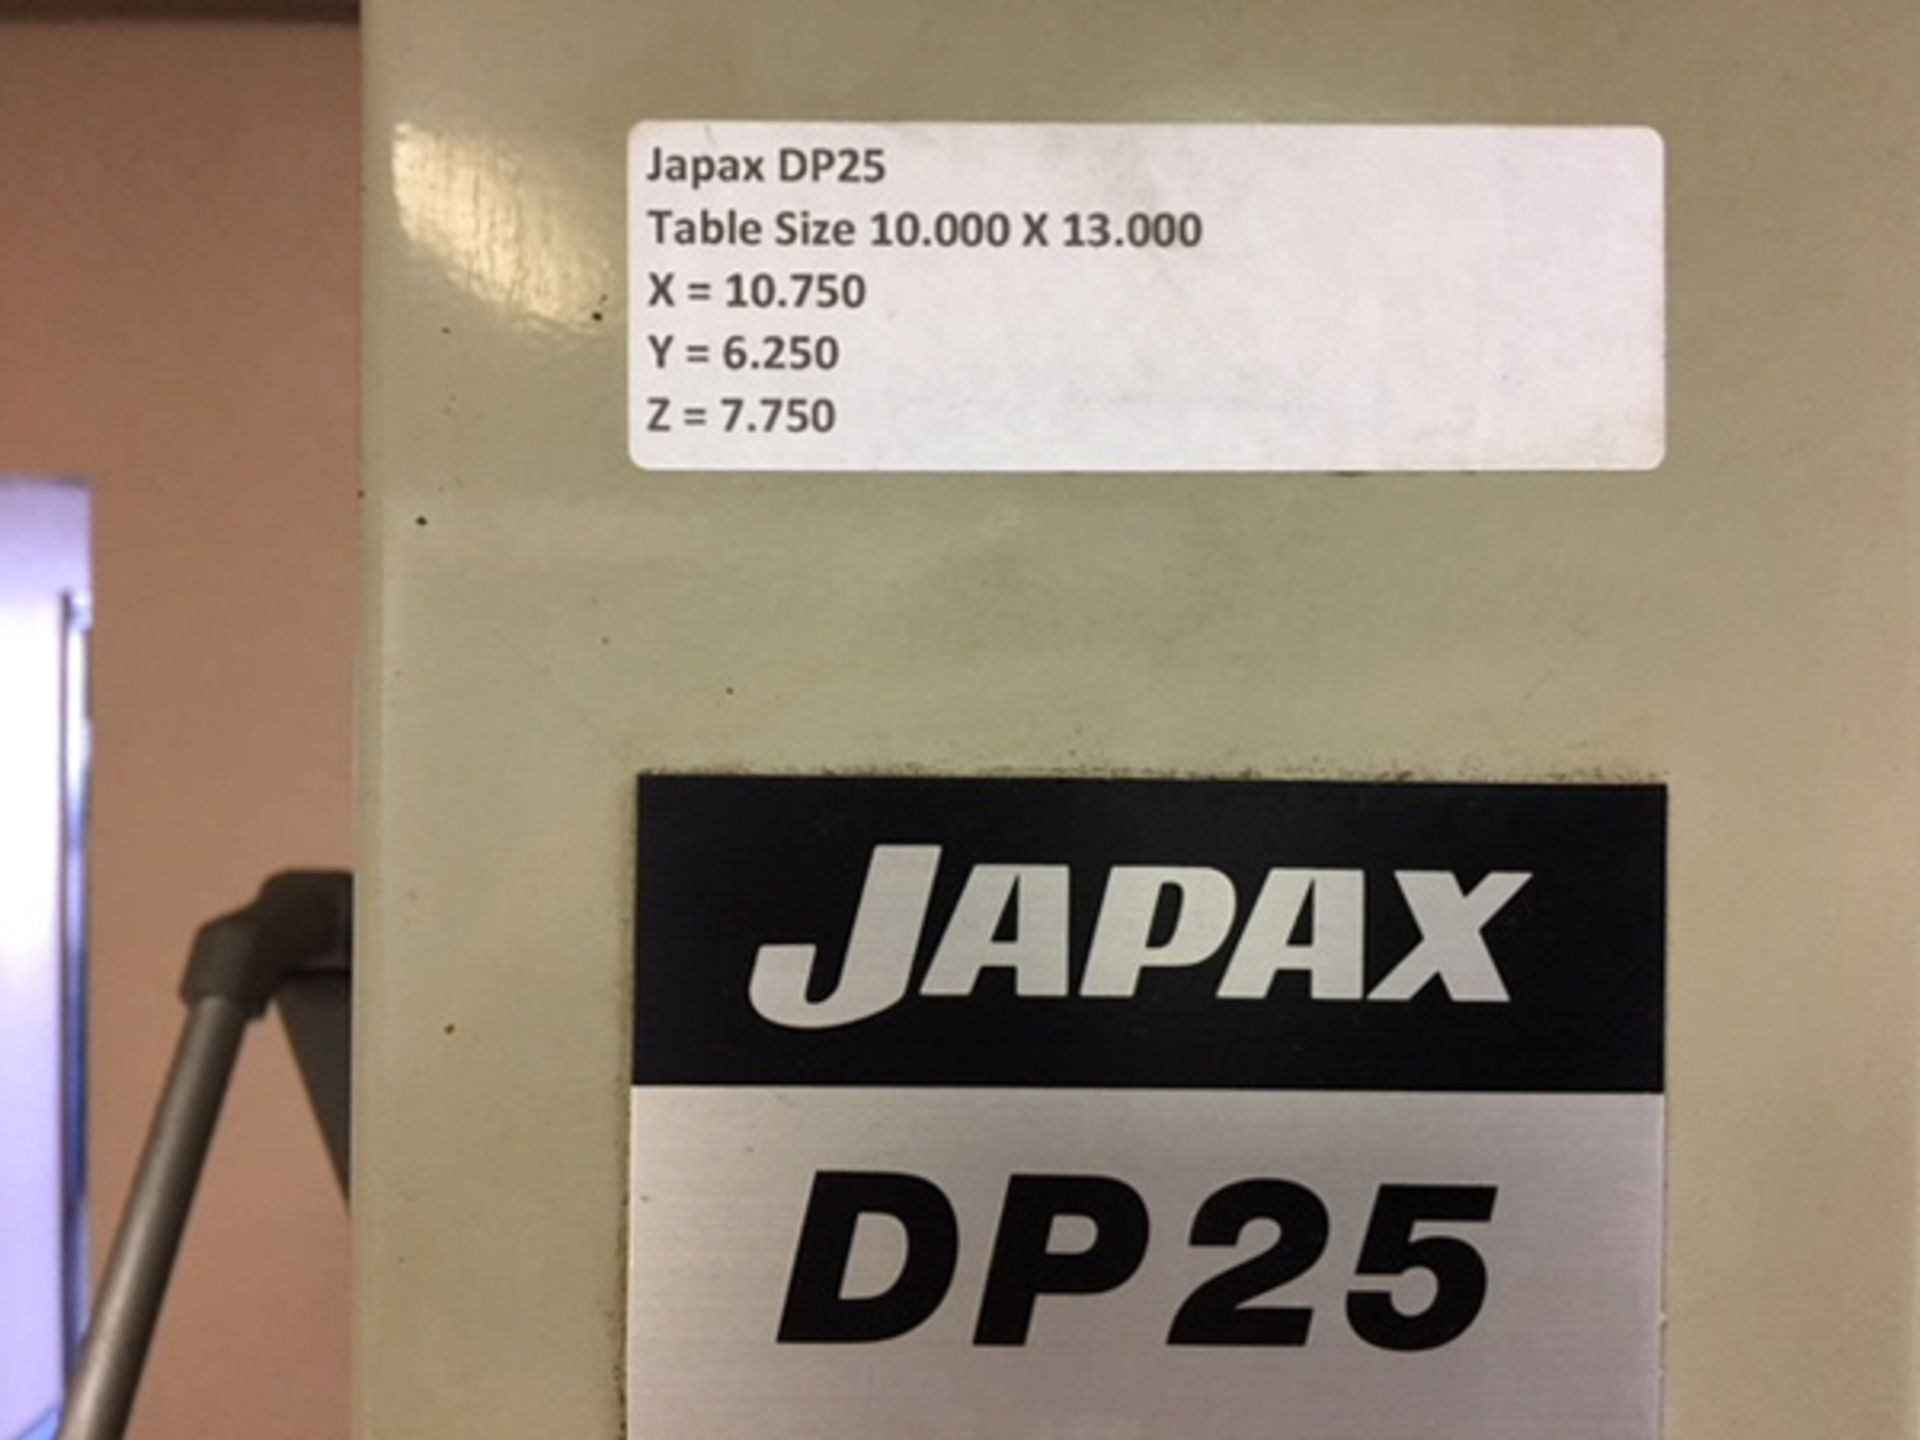 1983 Japax DP25 Die Sinker EDM W/ Japas AS-2, X - 10.75, Y - 6.25, Z - 7.75, Table - 10" x 13" - Image 5 of 7